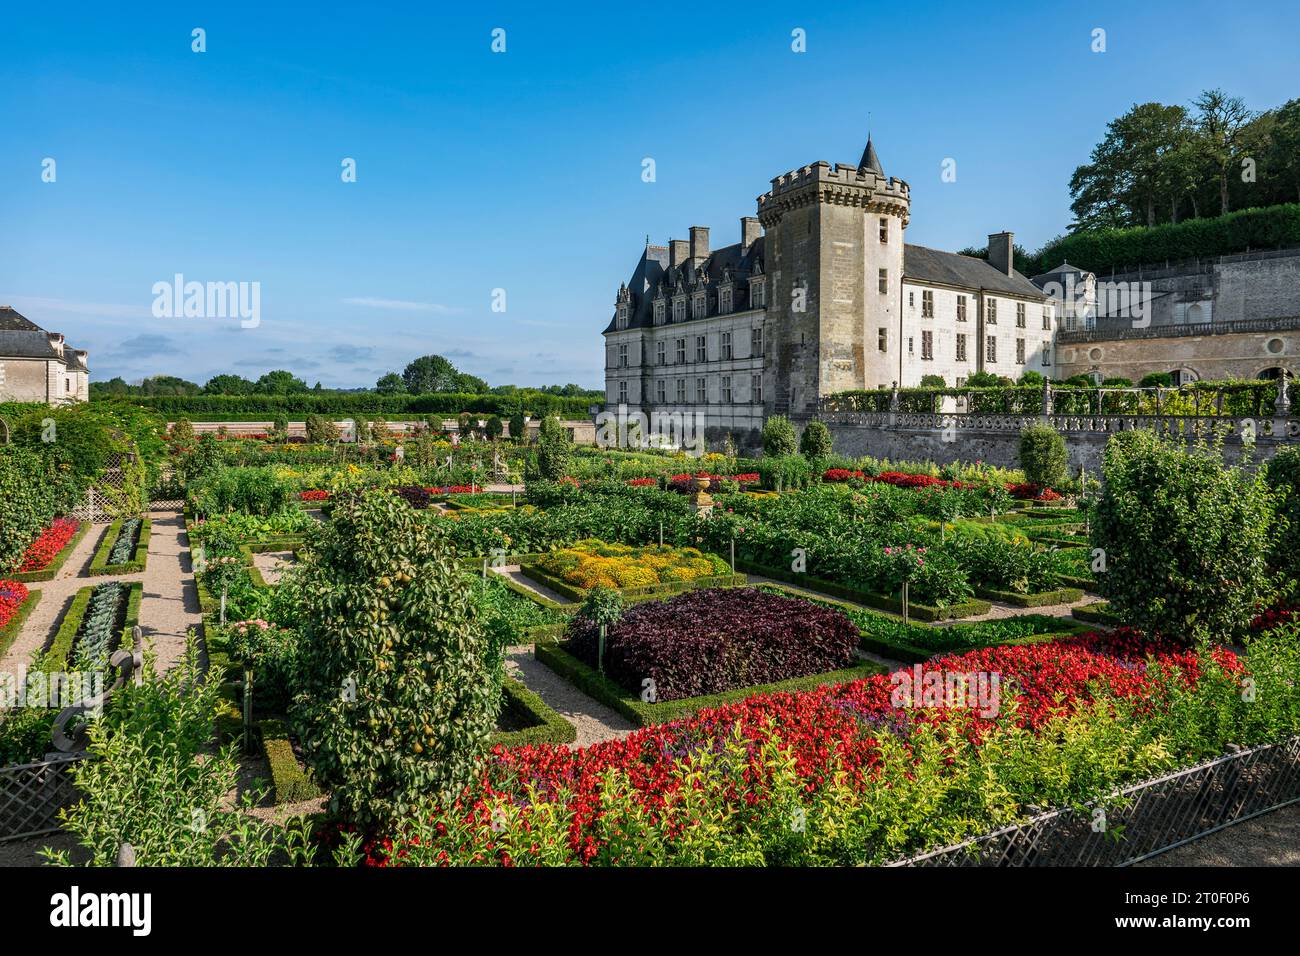 Le château de Villandry est situé à environ 17 km à l'ouest de la ville de Tours. Le château de Villandry est surtout célèbre pour ses jardins. Le village éponyme de Villandry est situé sur le cher et est la dernière commune avant sa confluence avec la Loire. Banque D'Images